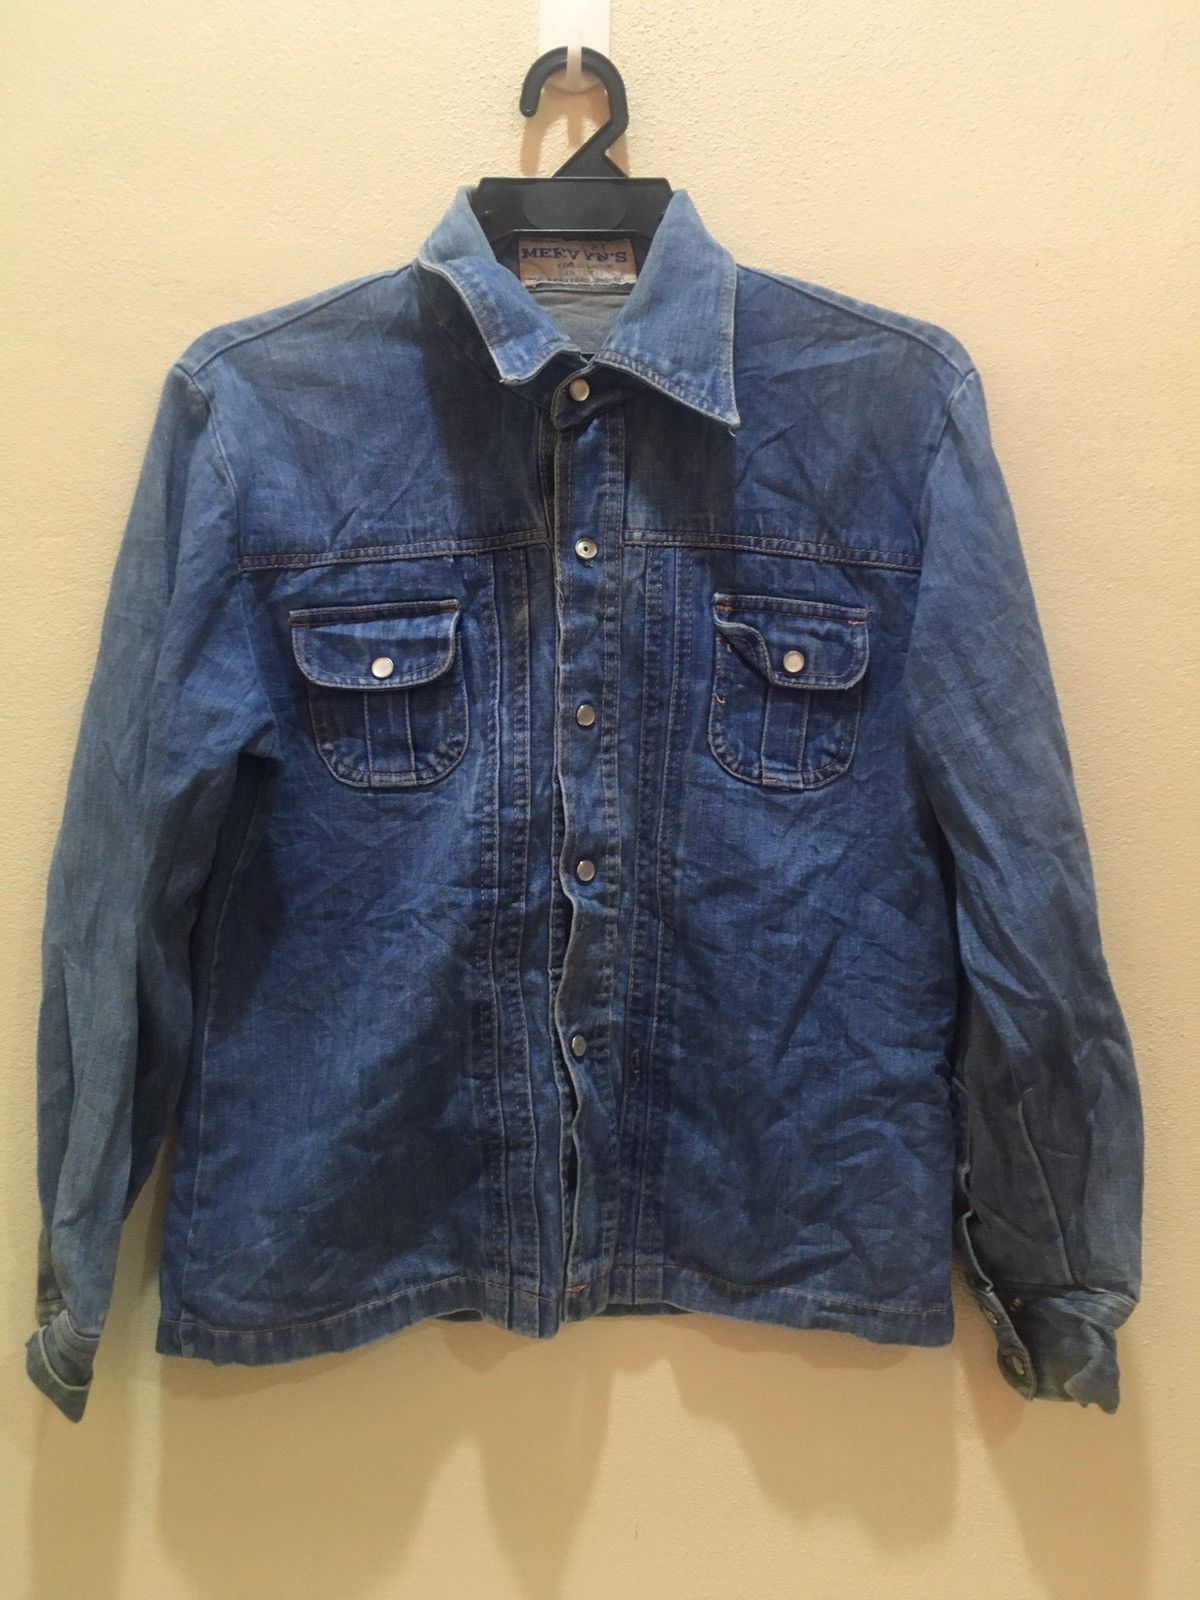 Vintage Mervyn Denim Jacket | Grailed